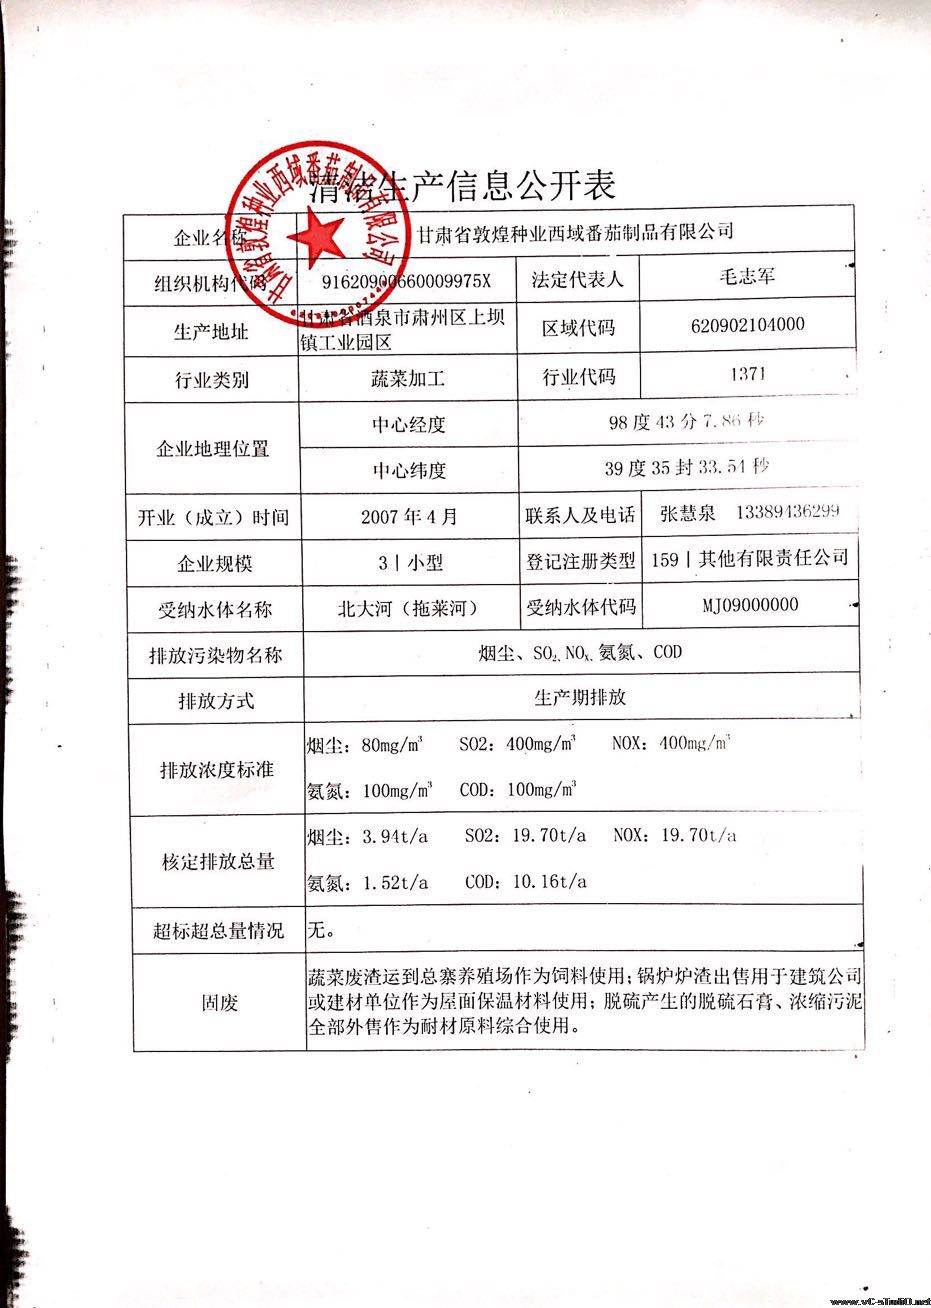 甘肃省敦煌种业西域番茄制品有限公司清洁生产信息公开表